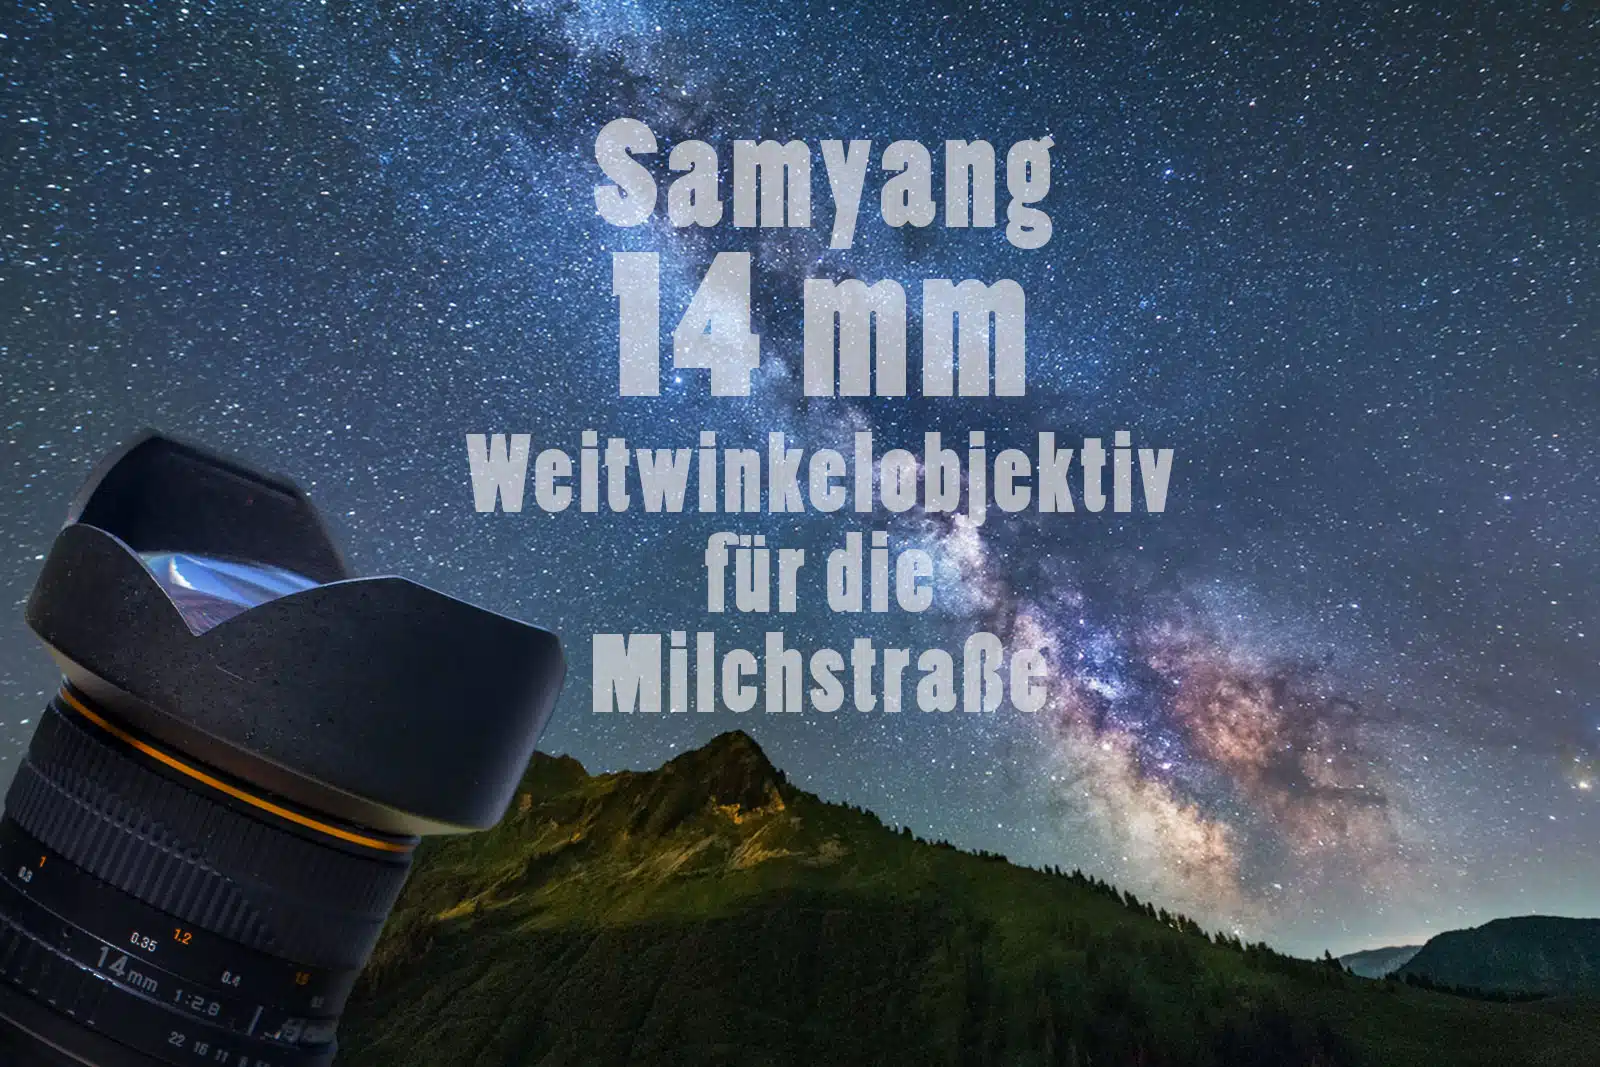 Samyang 14 mm Weitwinkelobjektiv für Milchstraße